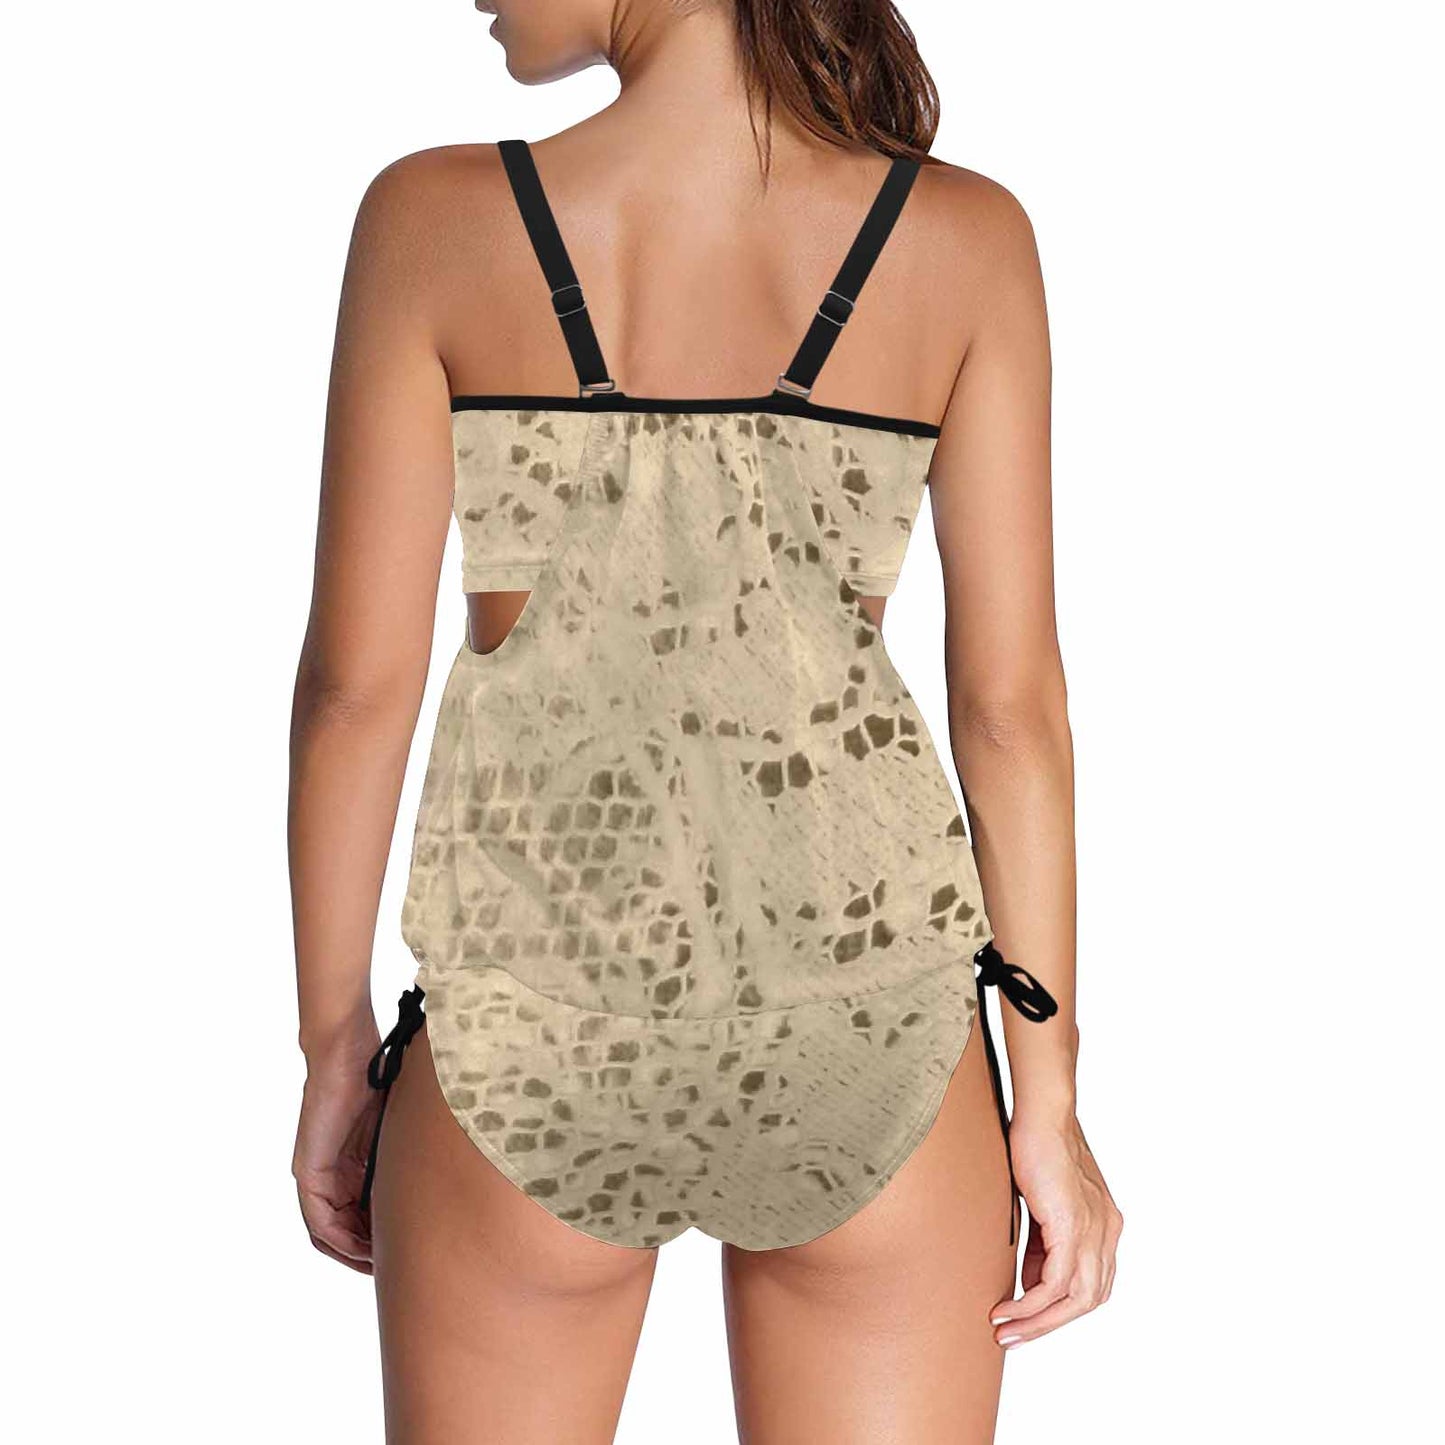 Tankini cover belly swim wear, Printed Victorian lace design 26